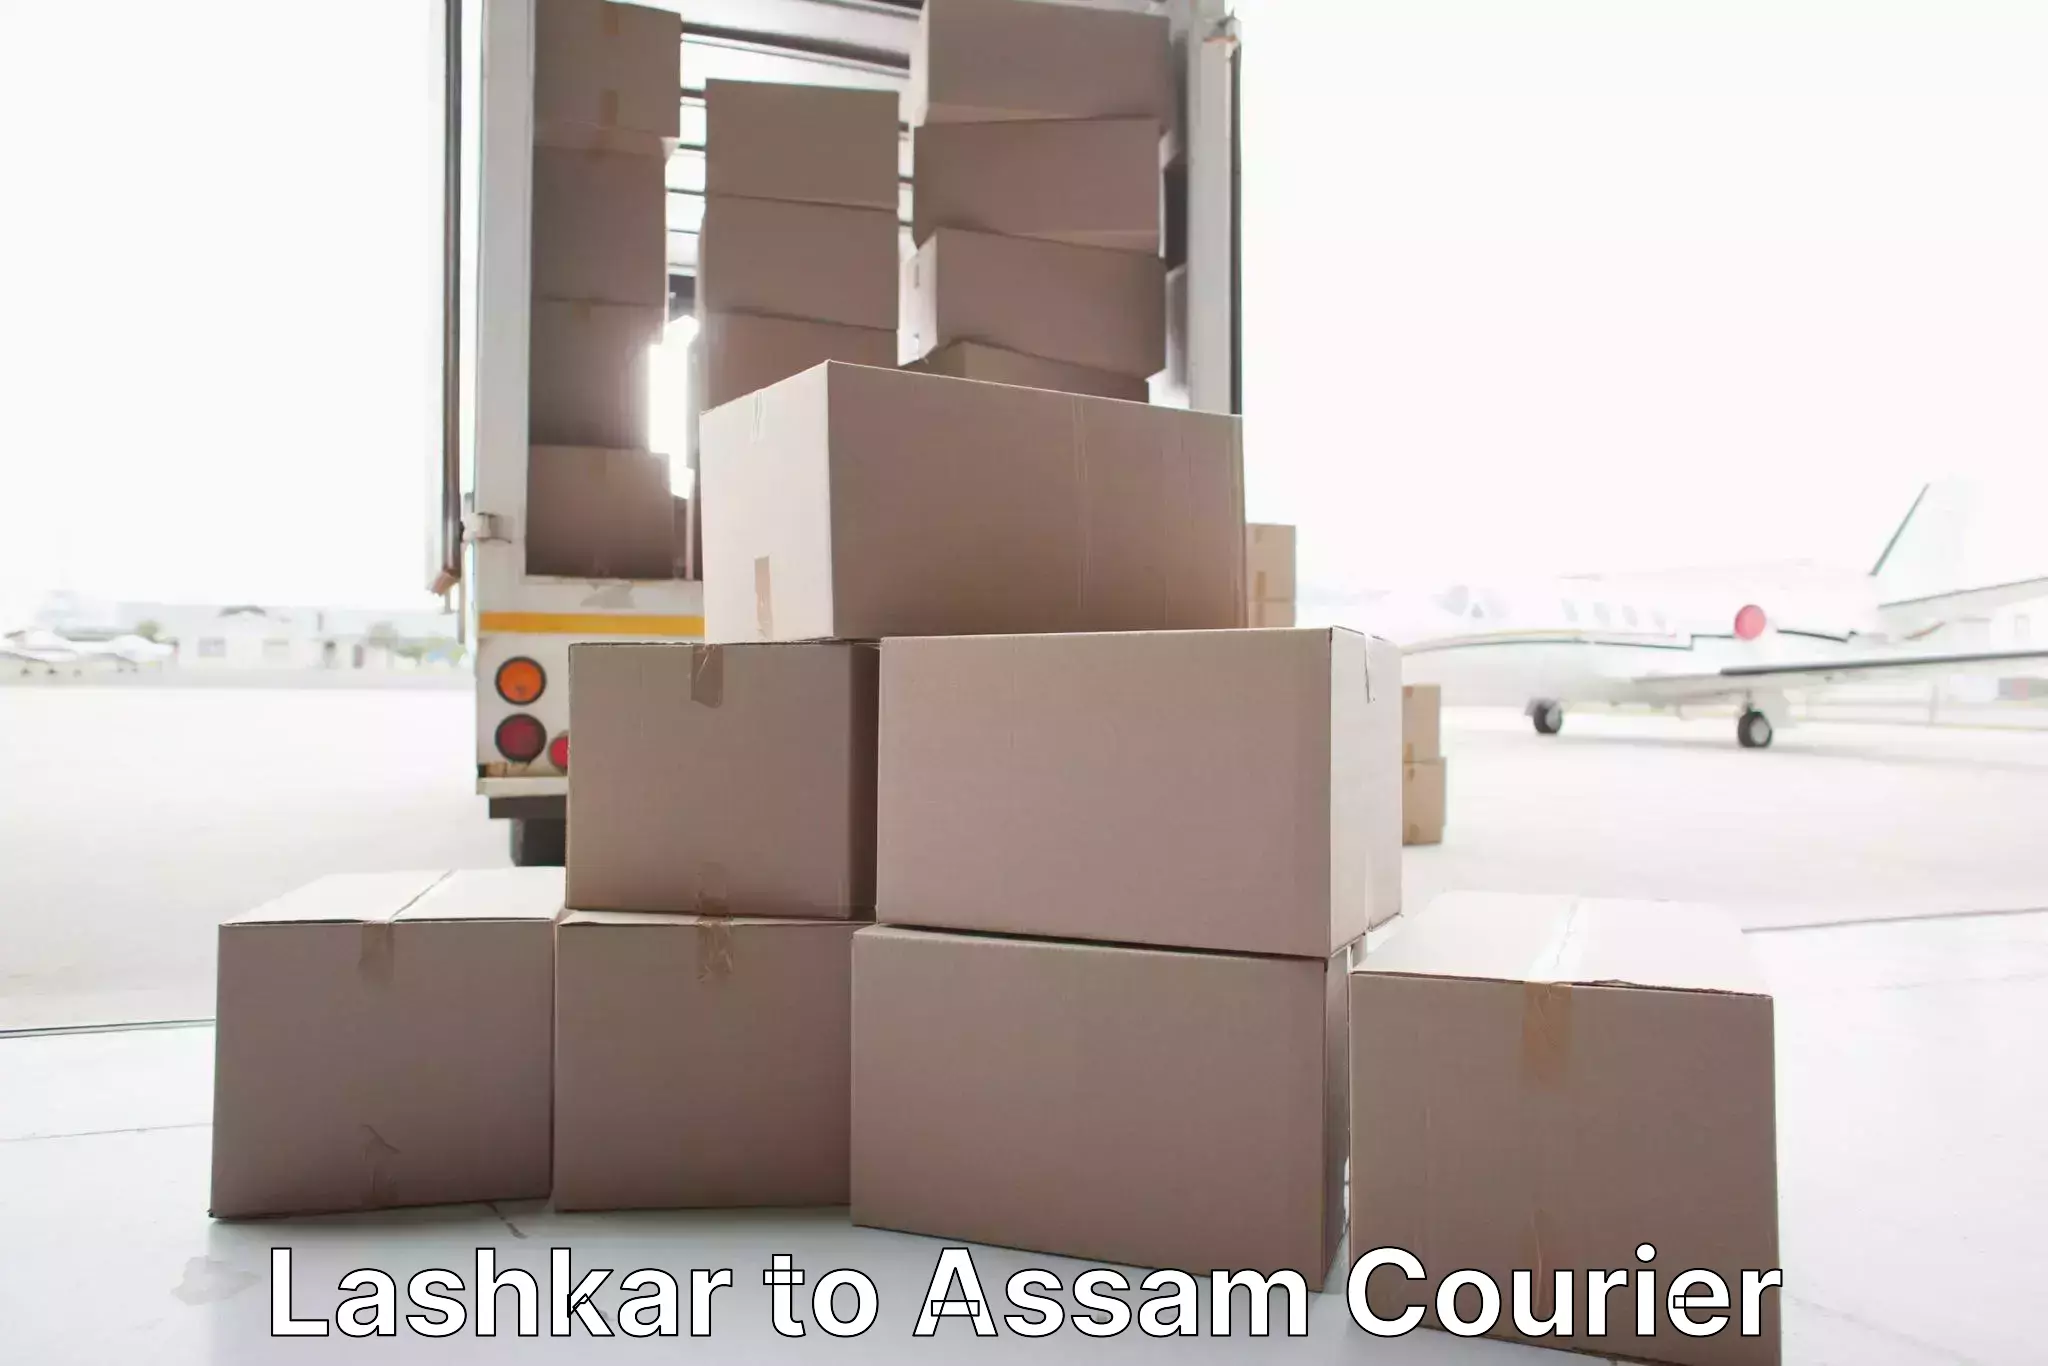 Furniture transport specialists Lashkar to Assam